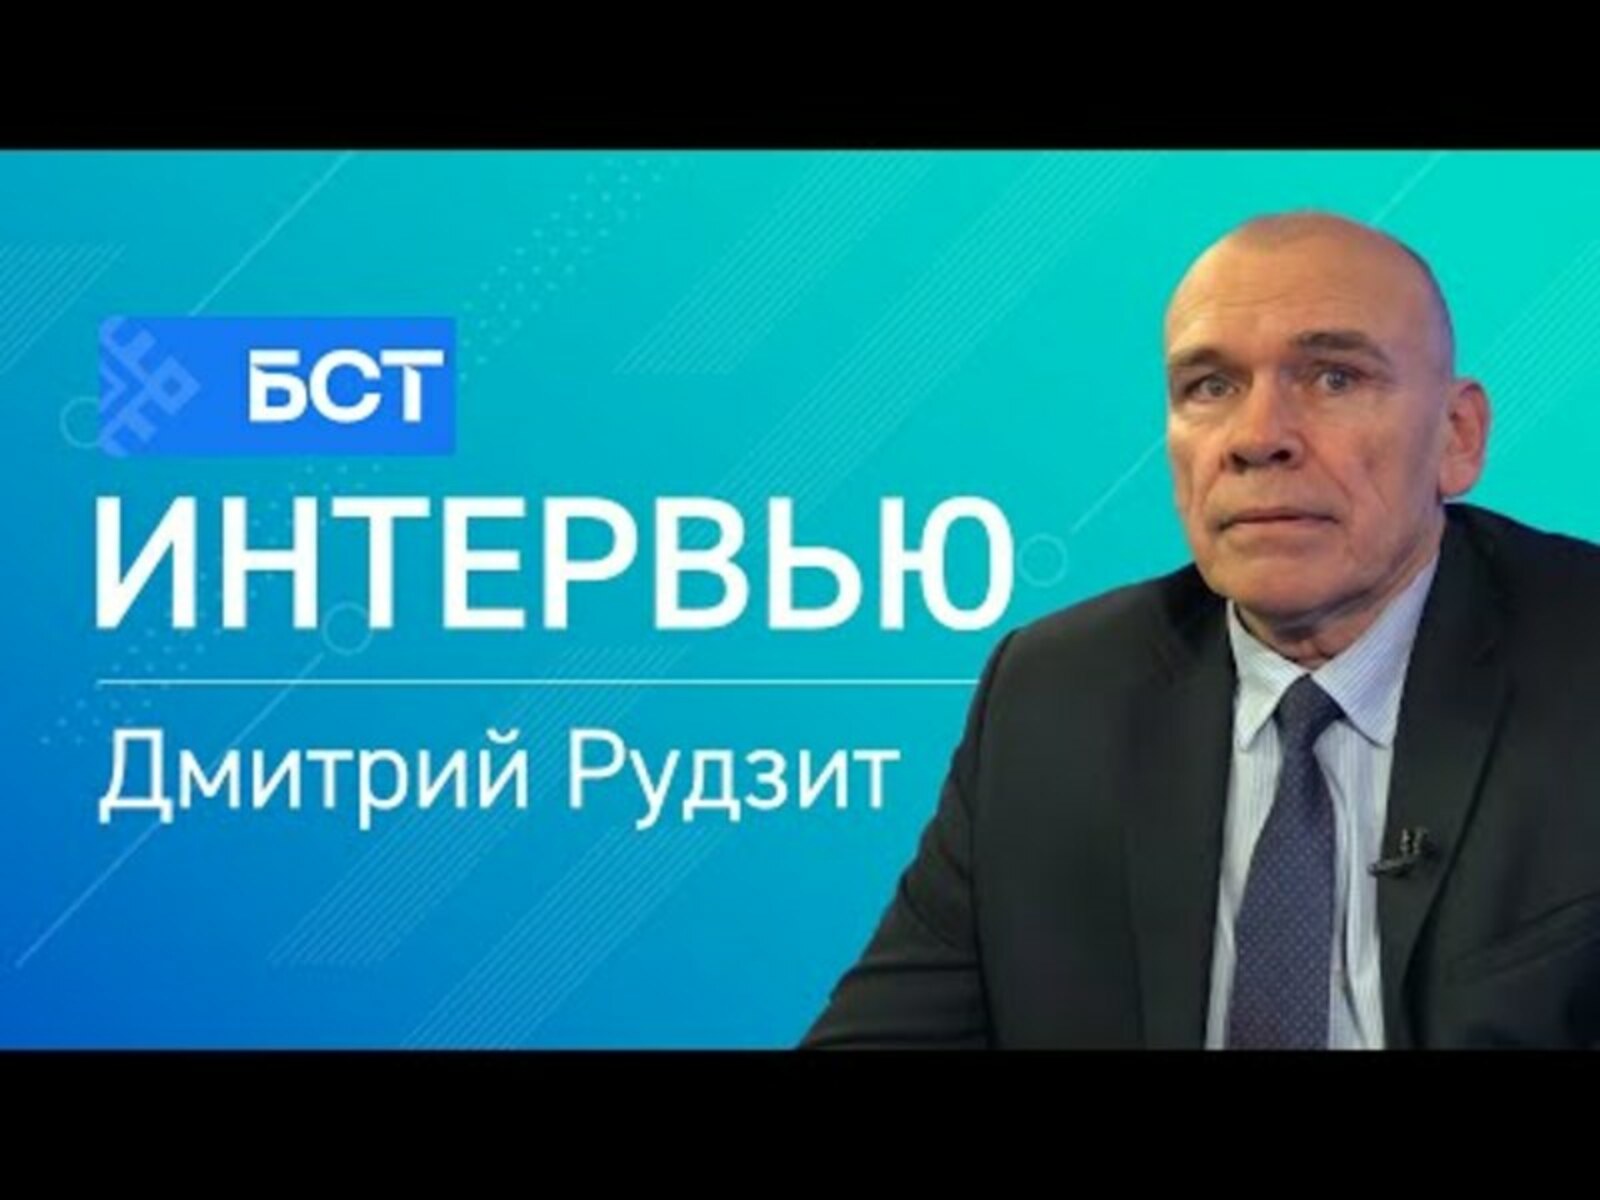 Дмитрий Рудзит: любой кризис - это время возможностей